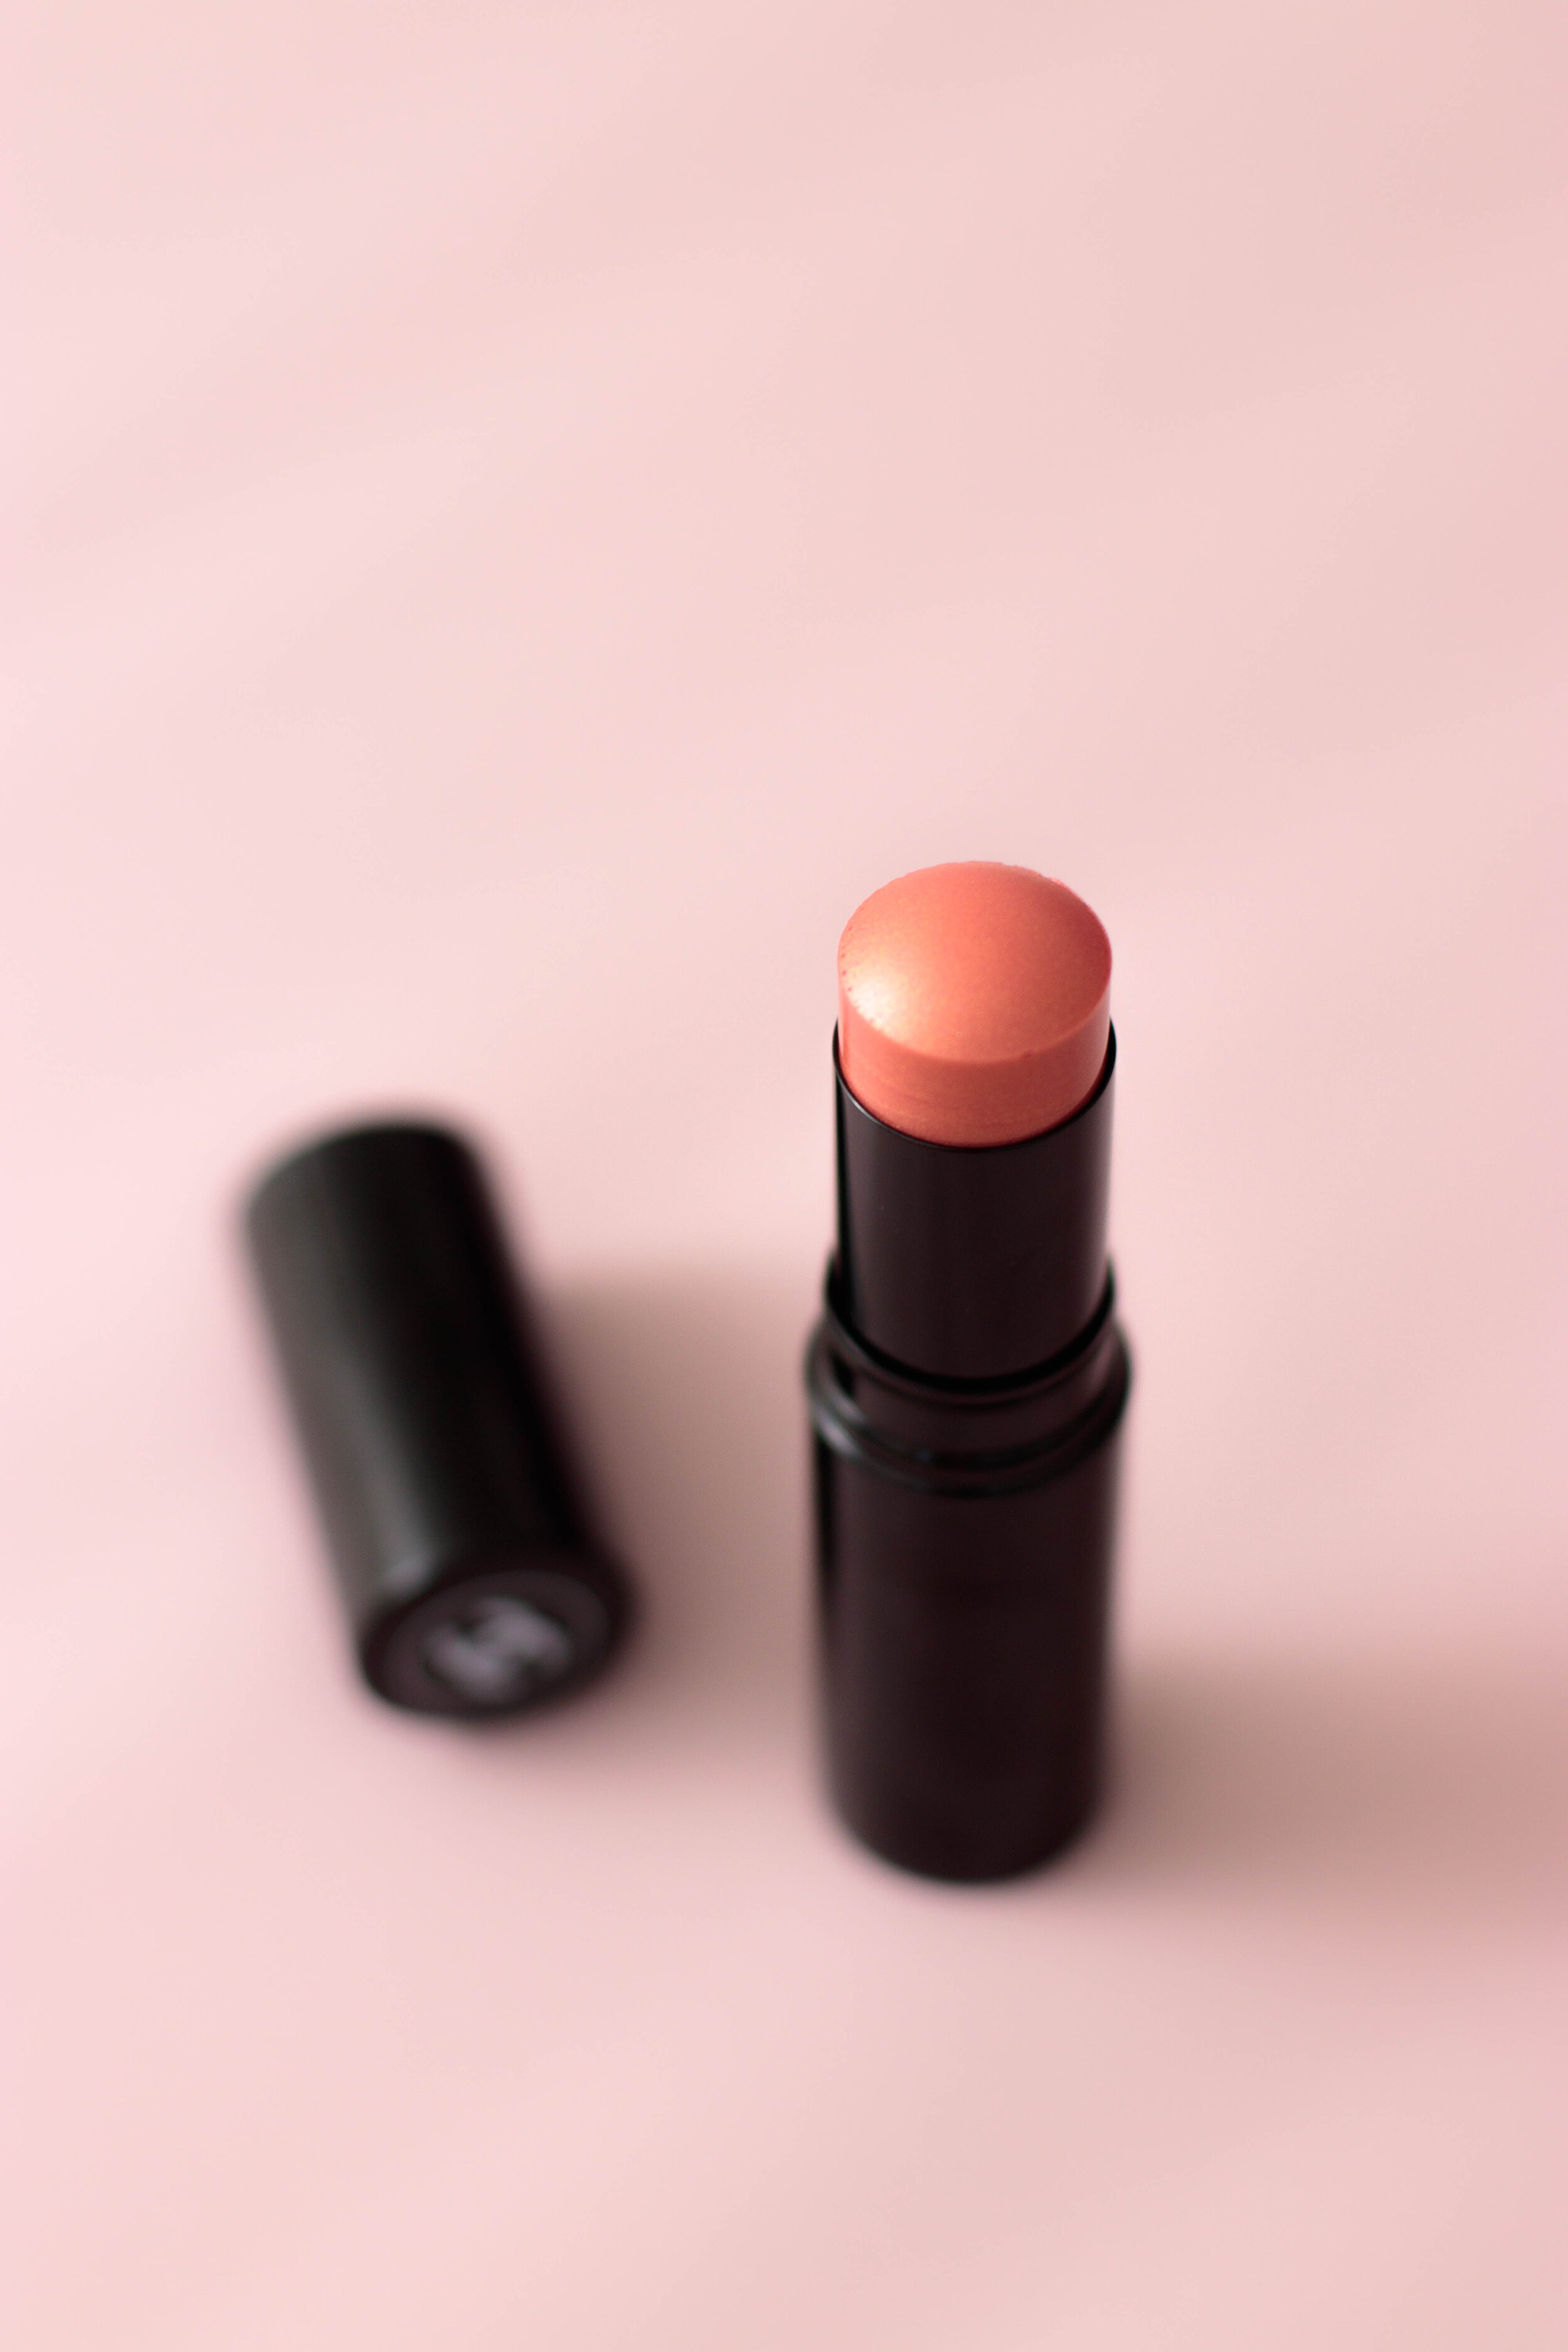 Chanel Baume Essentiel Stick Multi-Usage Rosée, mon avis ! — Pauuulette -  Blog Makeup